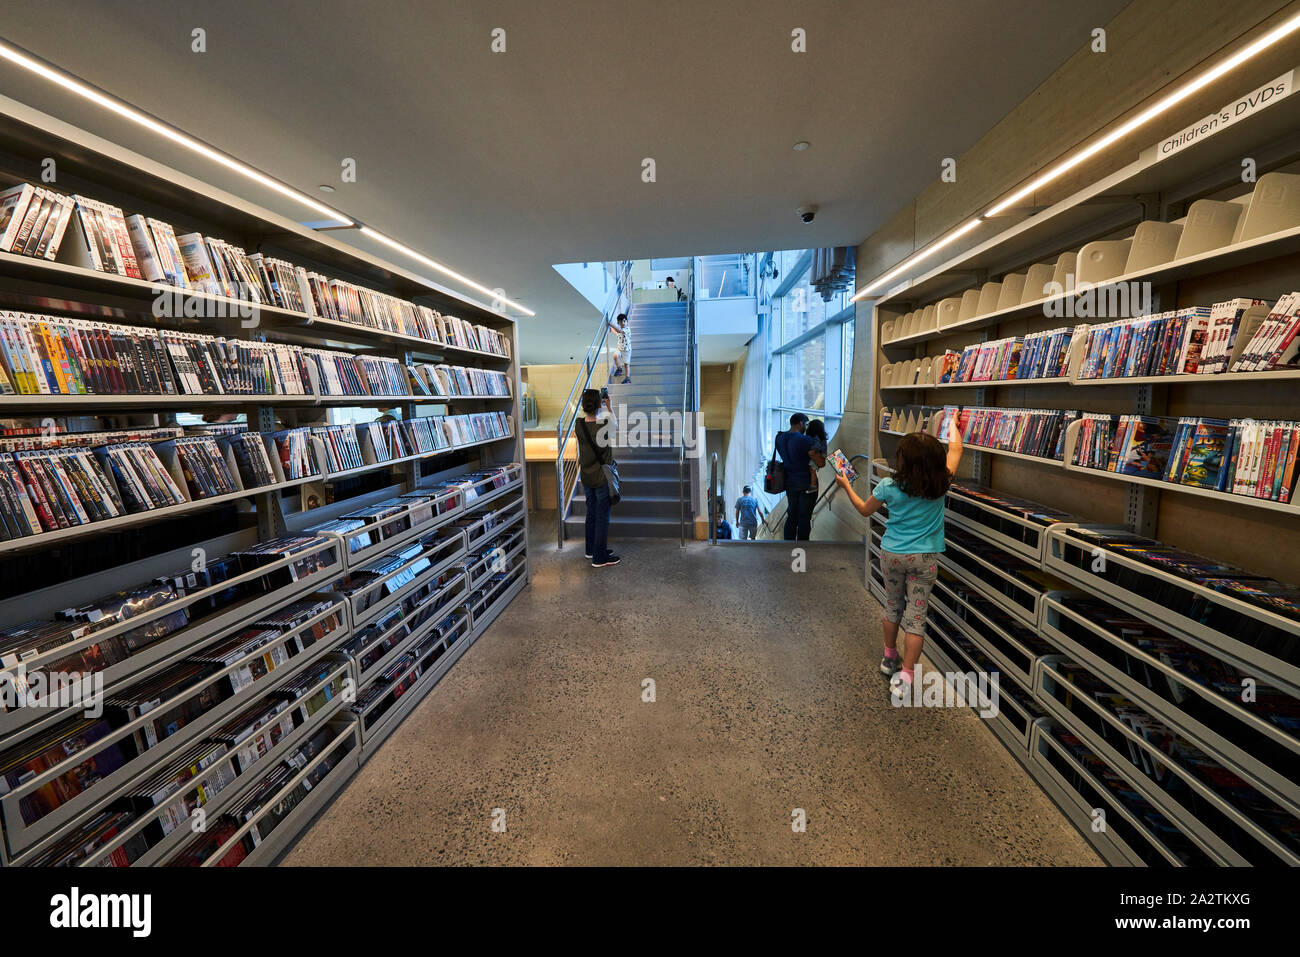 Hunters Point bibliothèque communautaire, conçu par Steven Holl Architects Banque D'Images